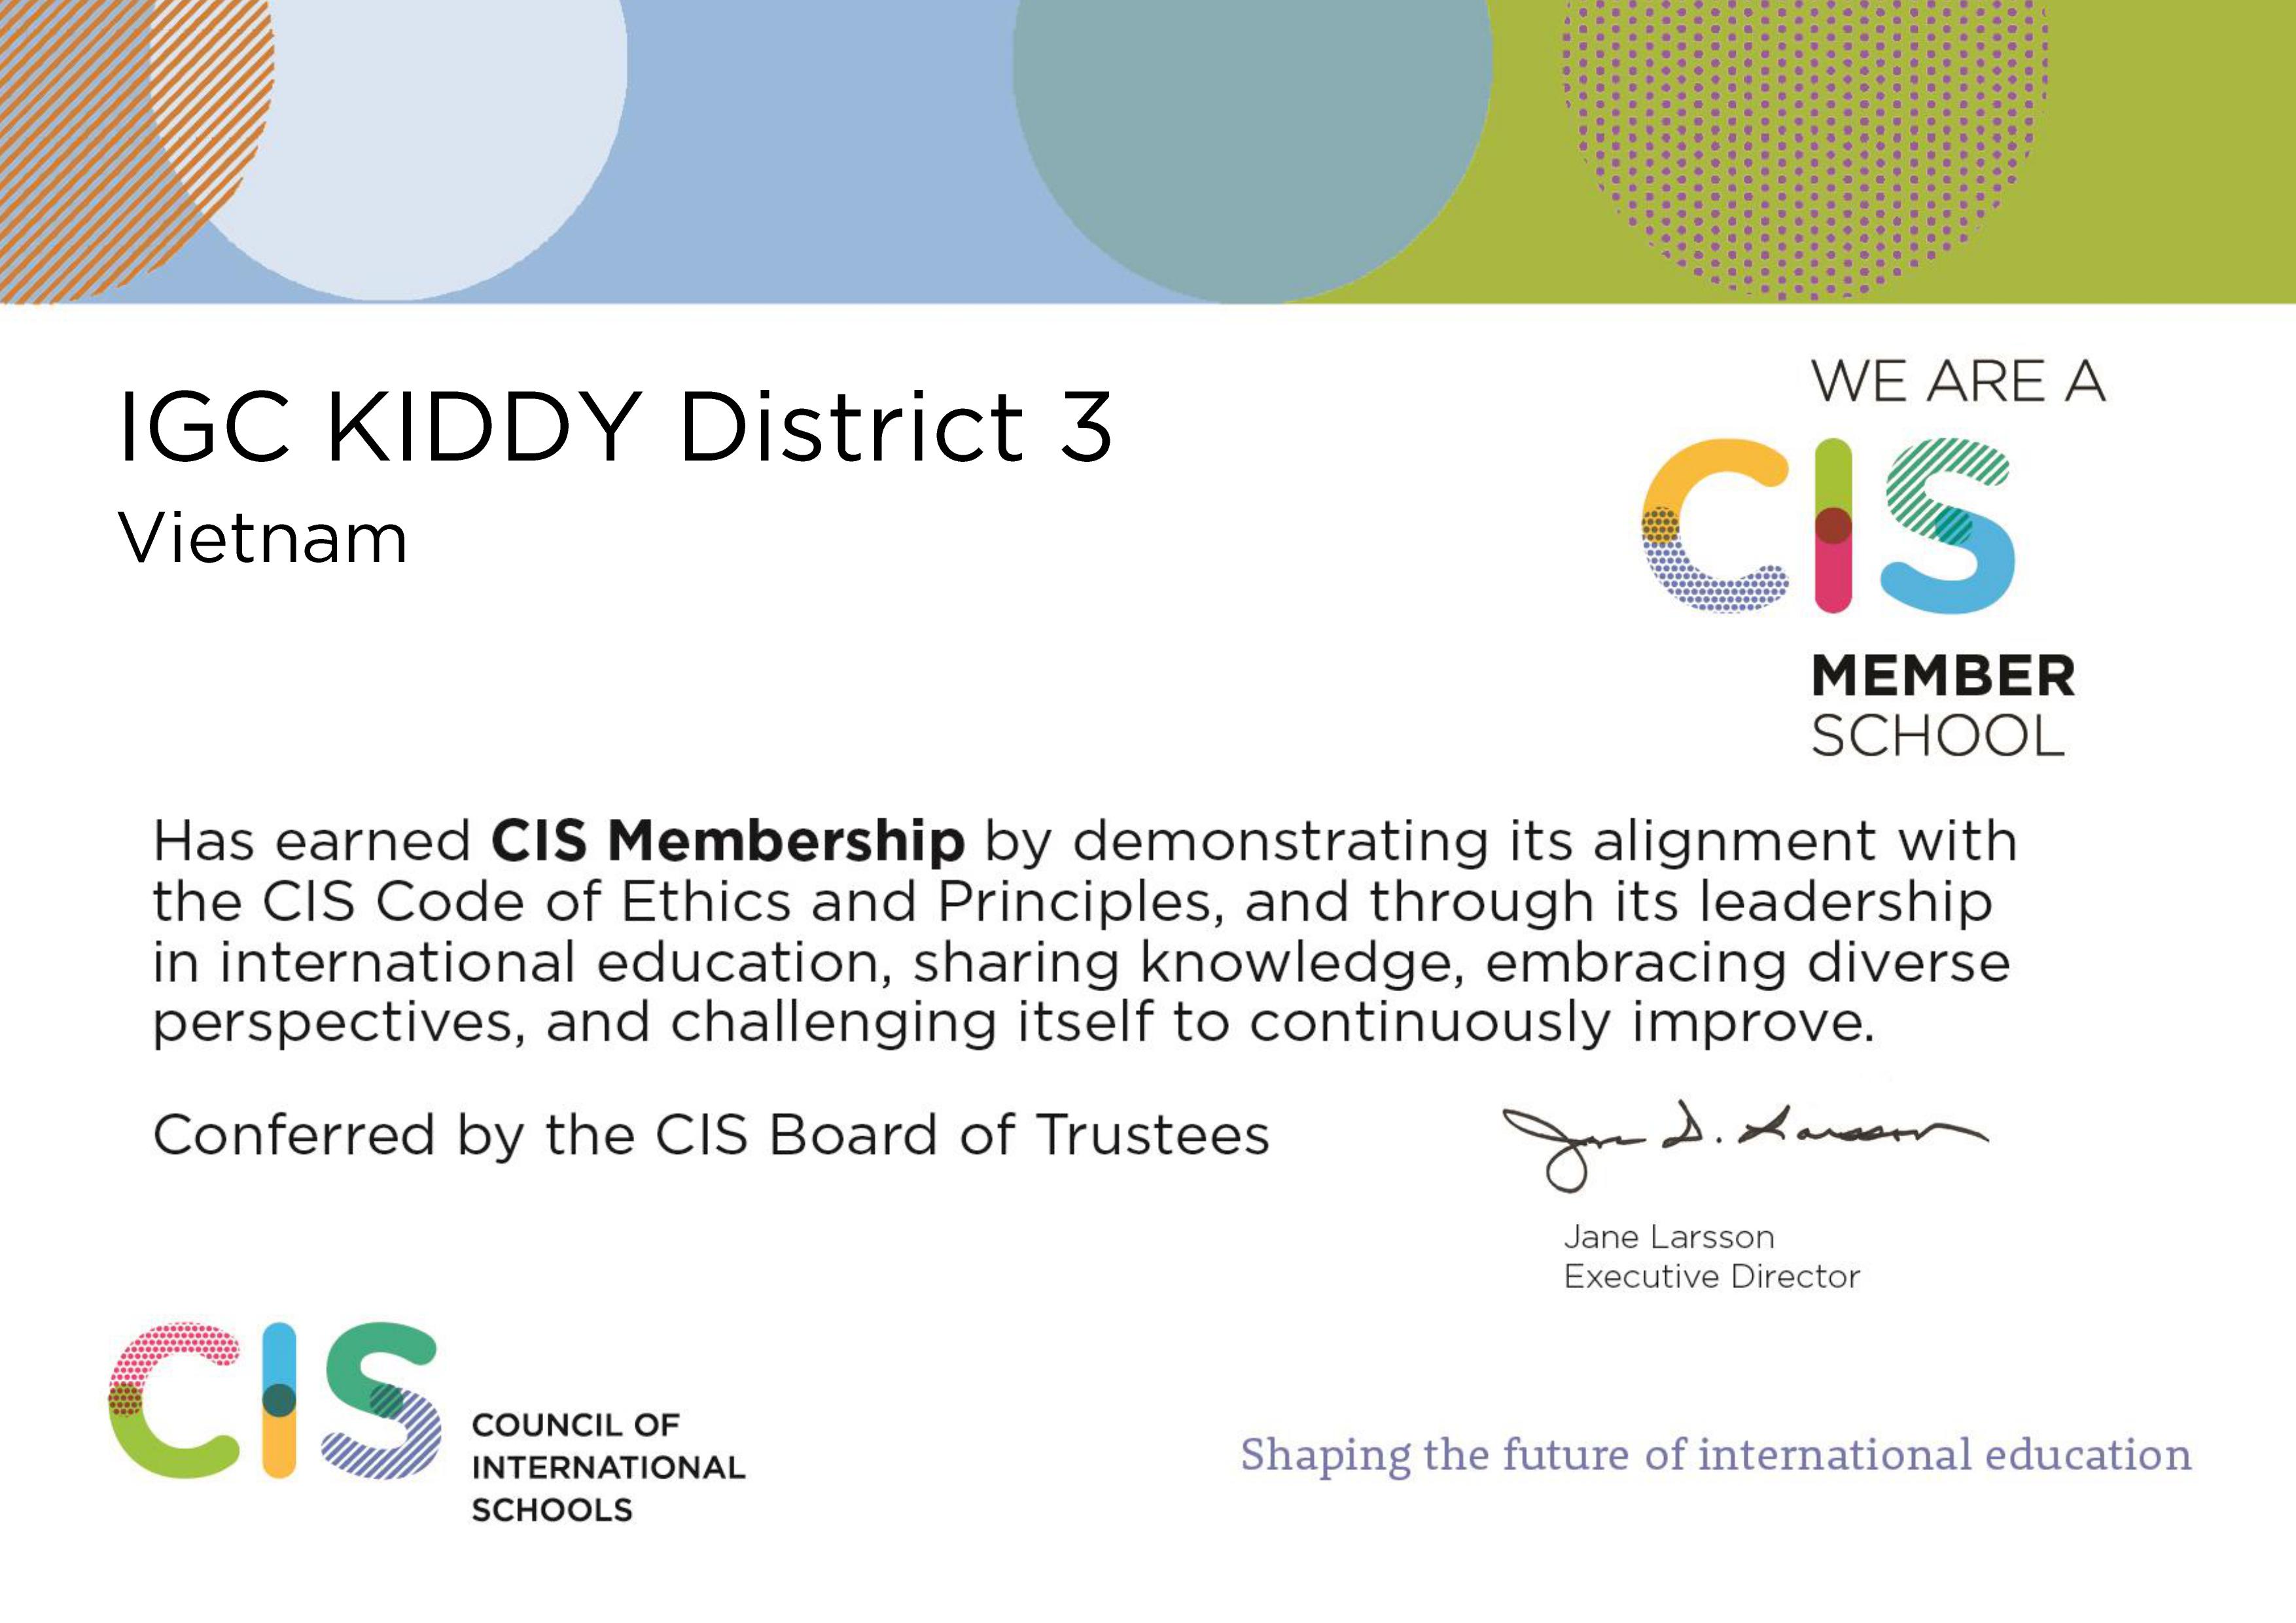 IGC Kiddy Cơ sở Quận 3 là thành viên Hội đồng các trường Quốc tế CIS